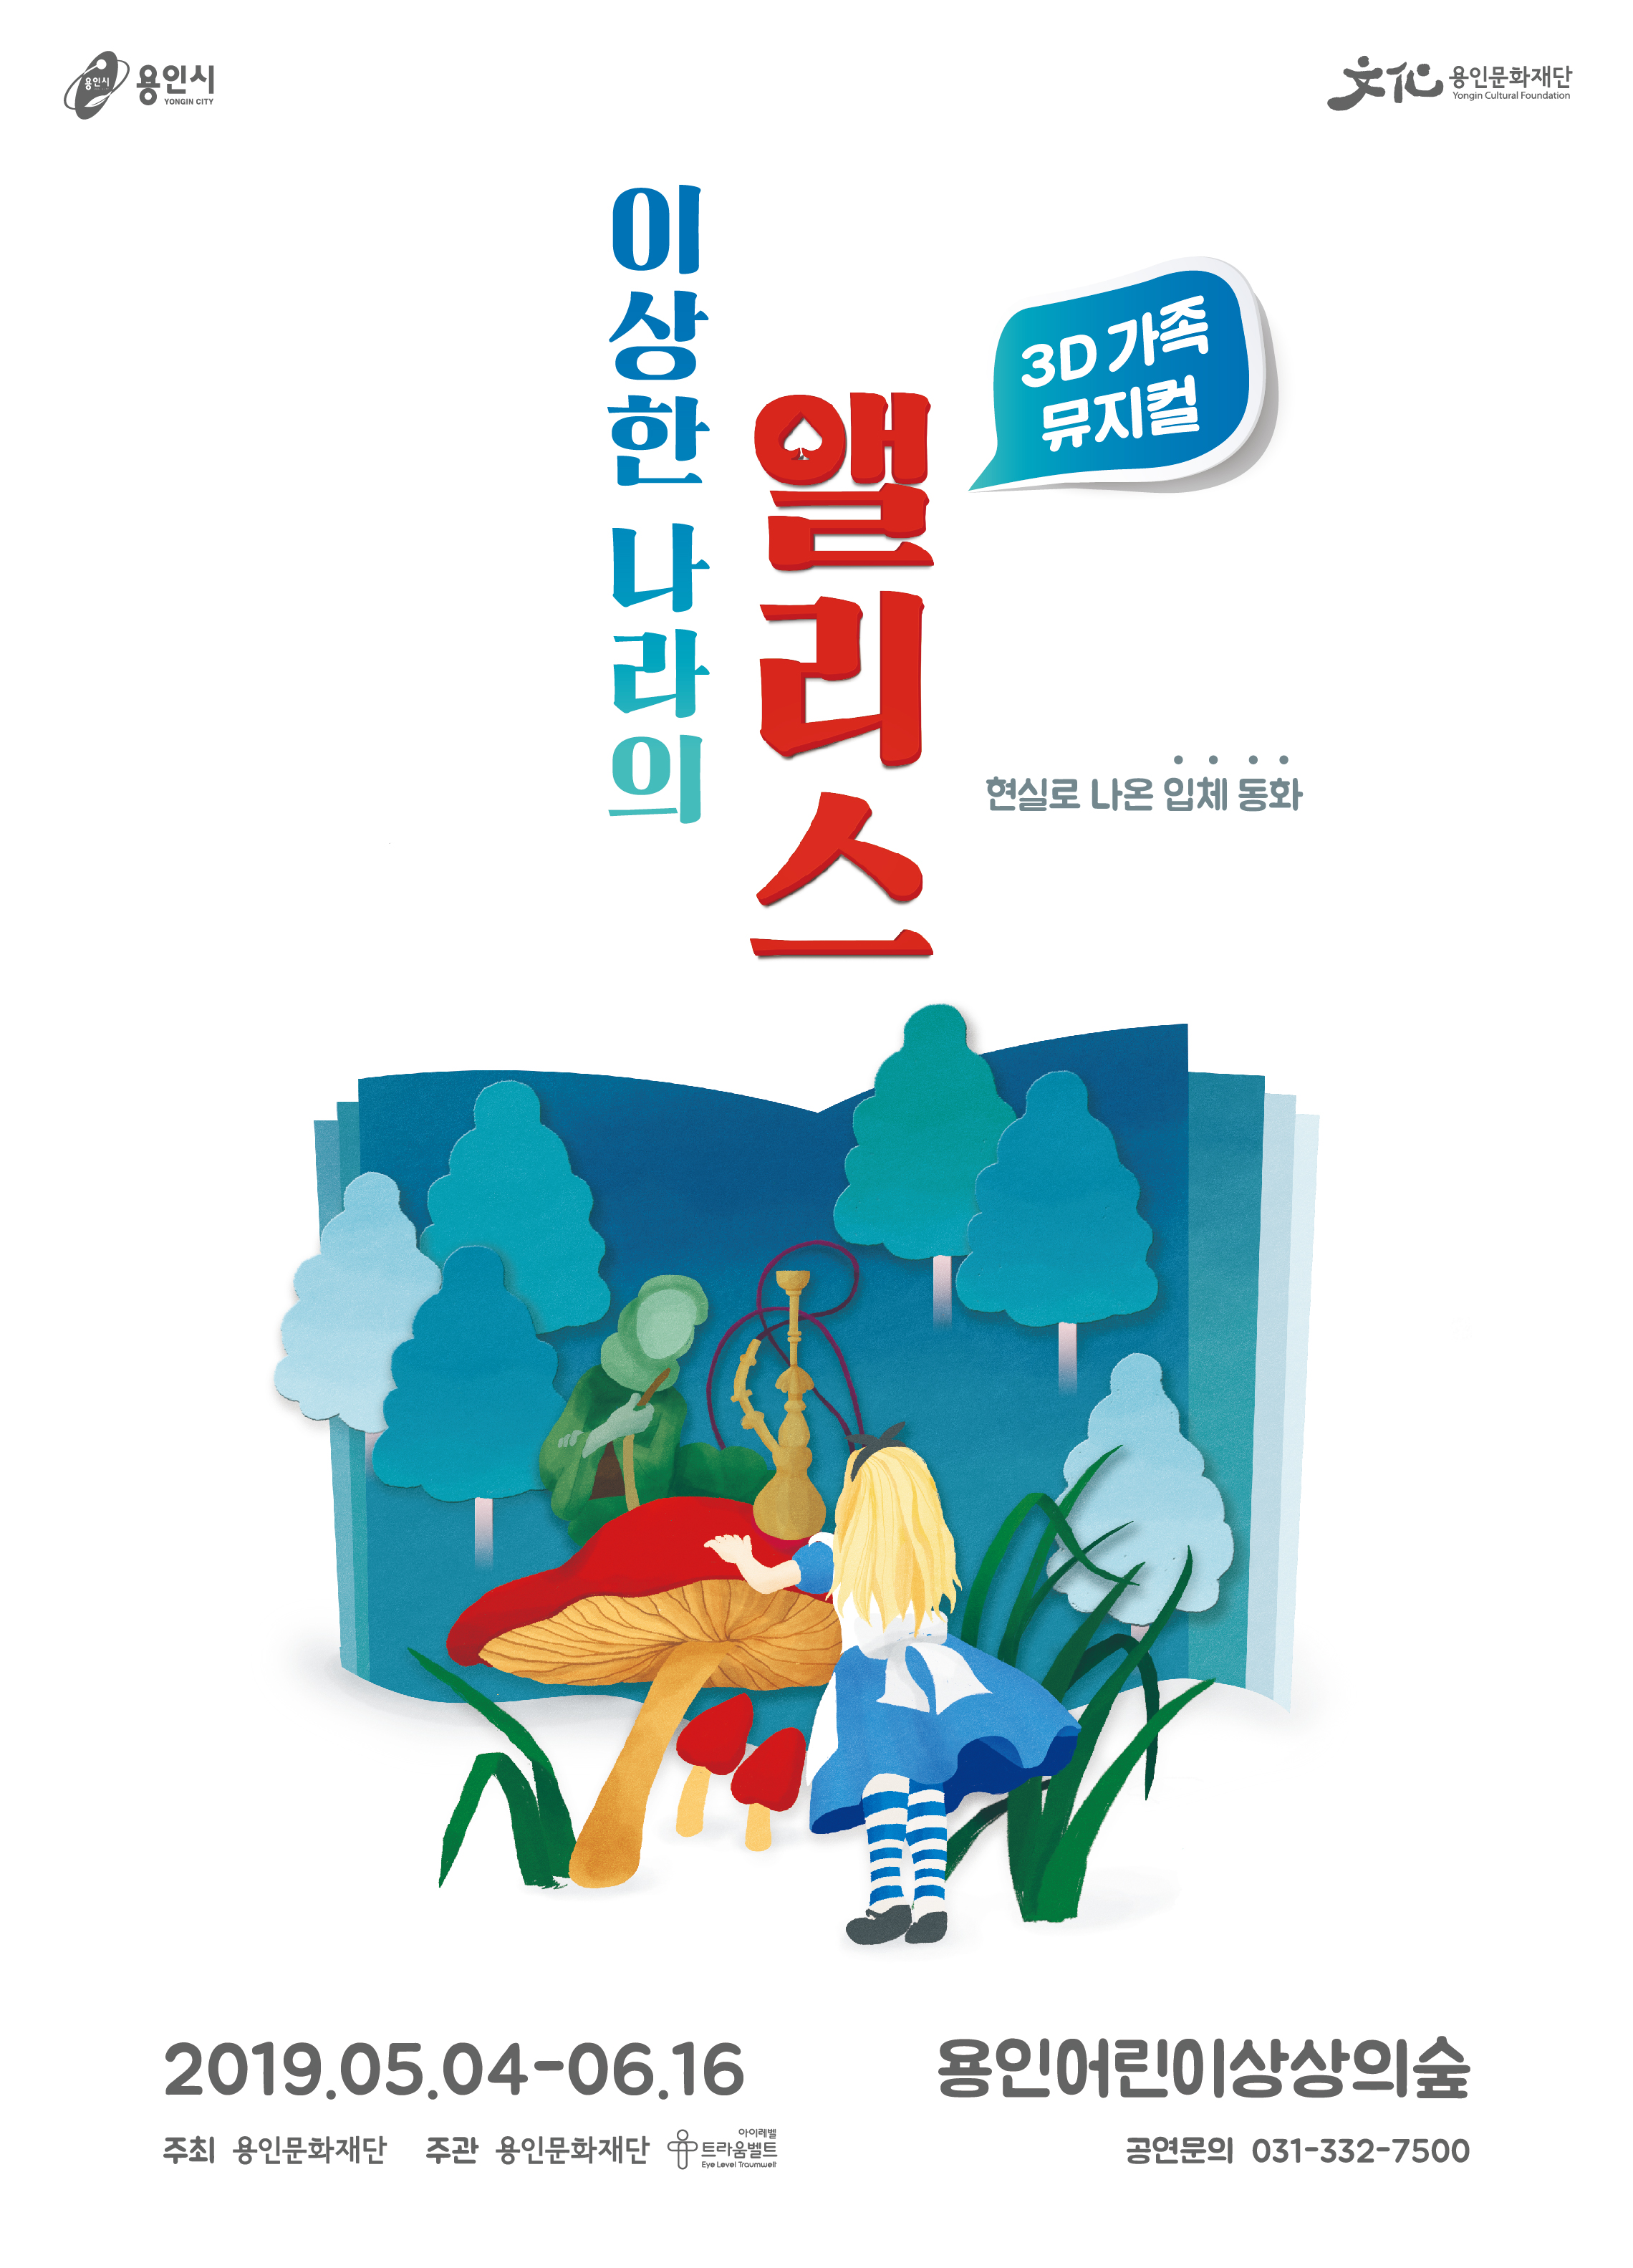 용인어린이상상의숲 공연놀이터 <3D 가족뮤지컬 이상한 나라의 앨리스> 포스터